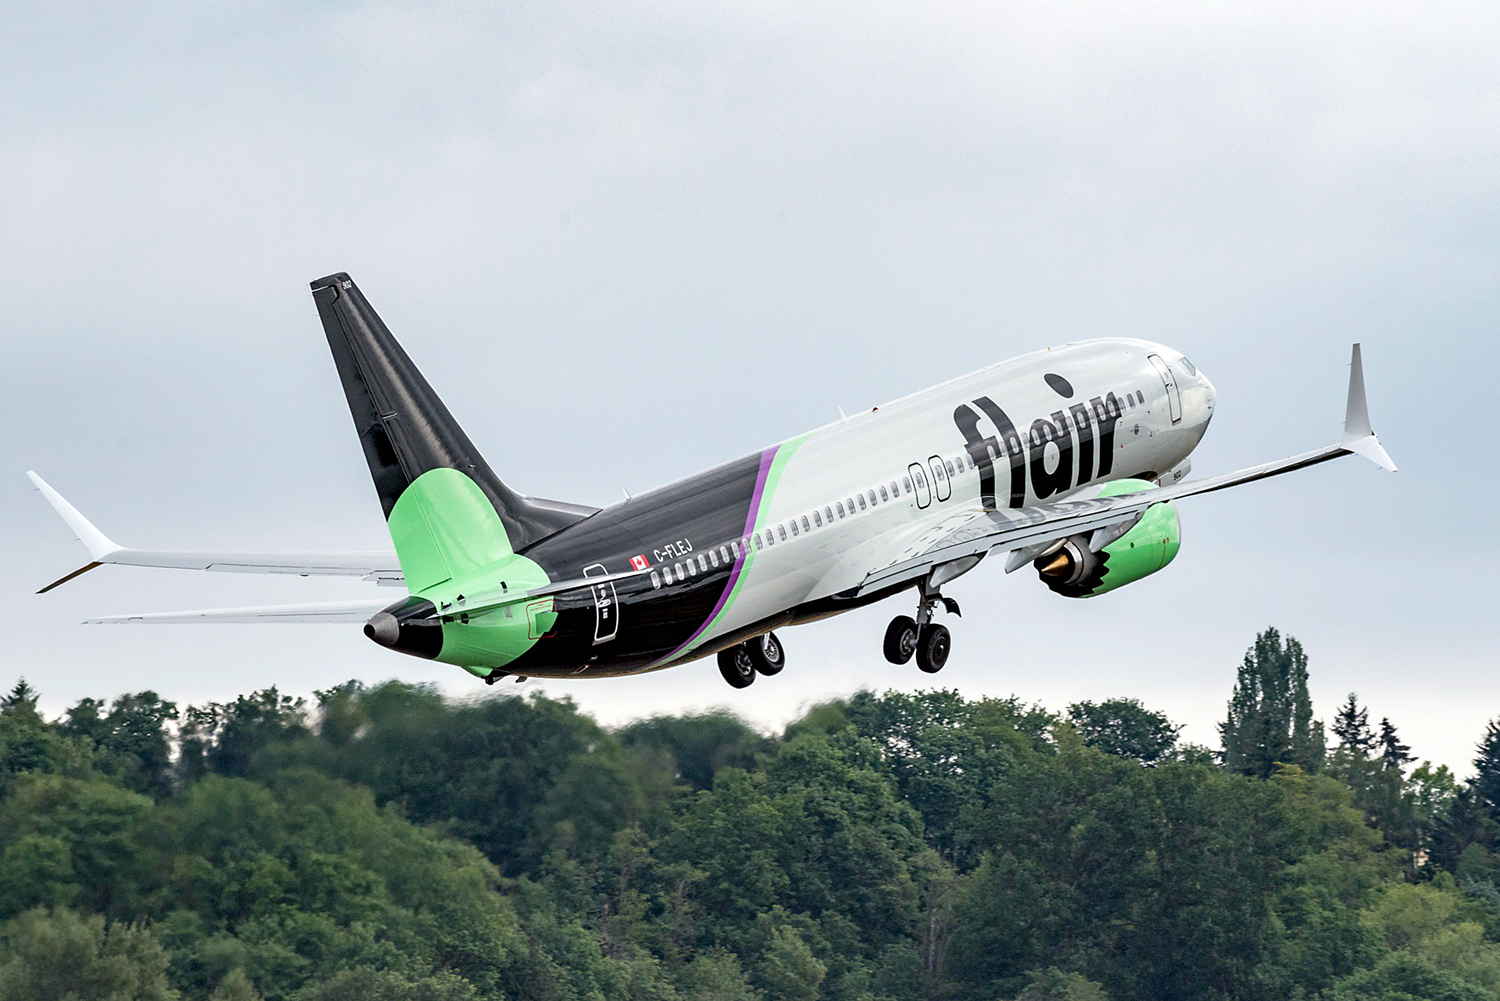 A passenger plane takes flight